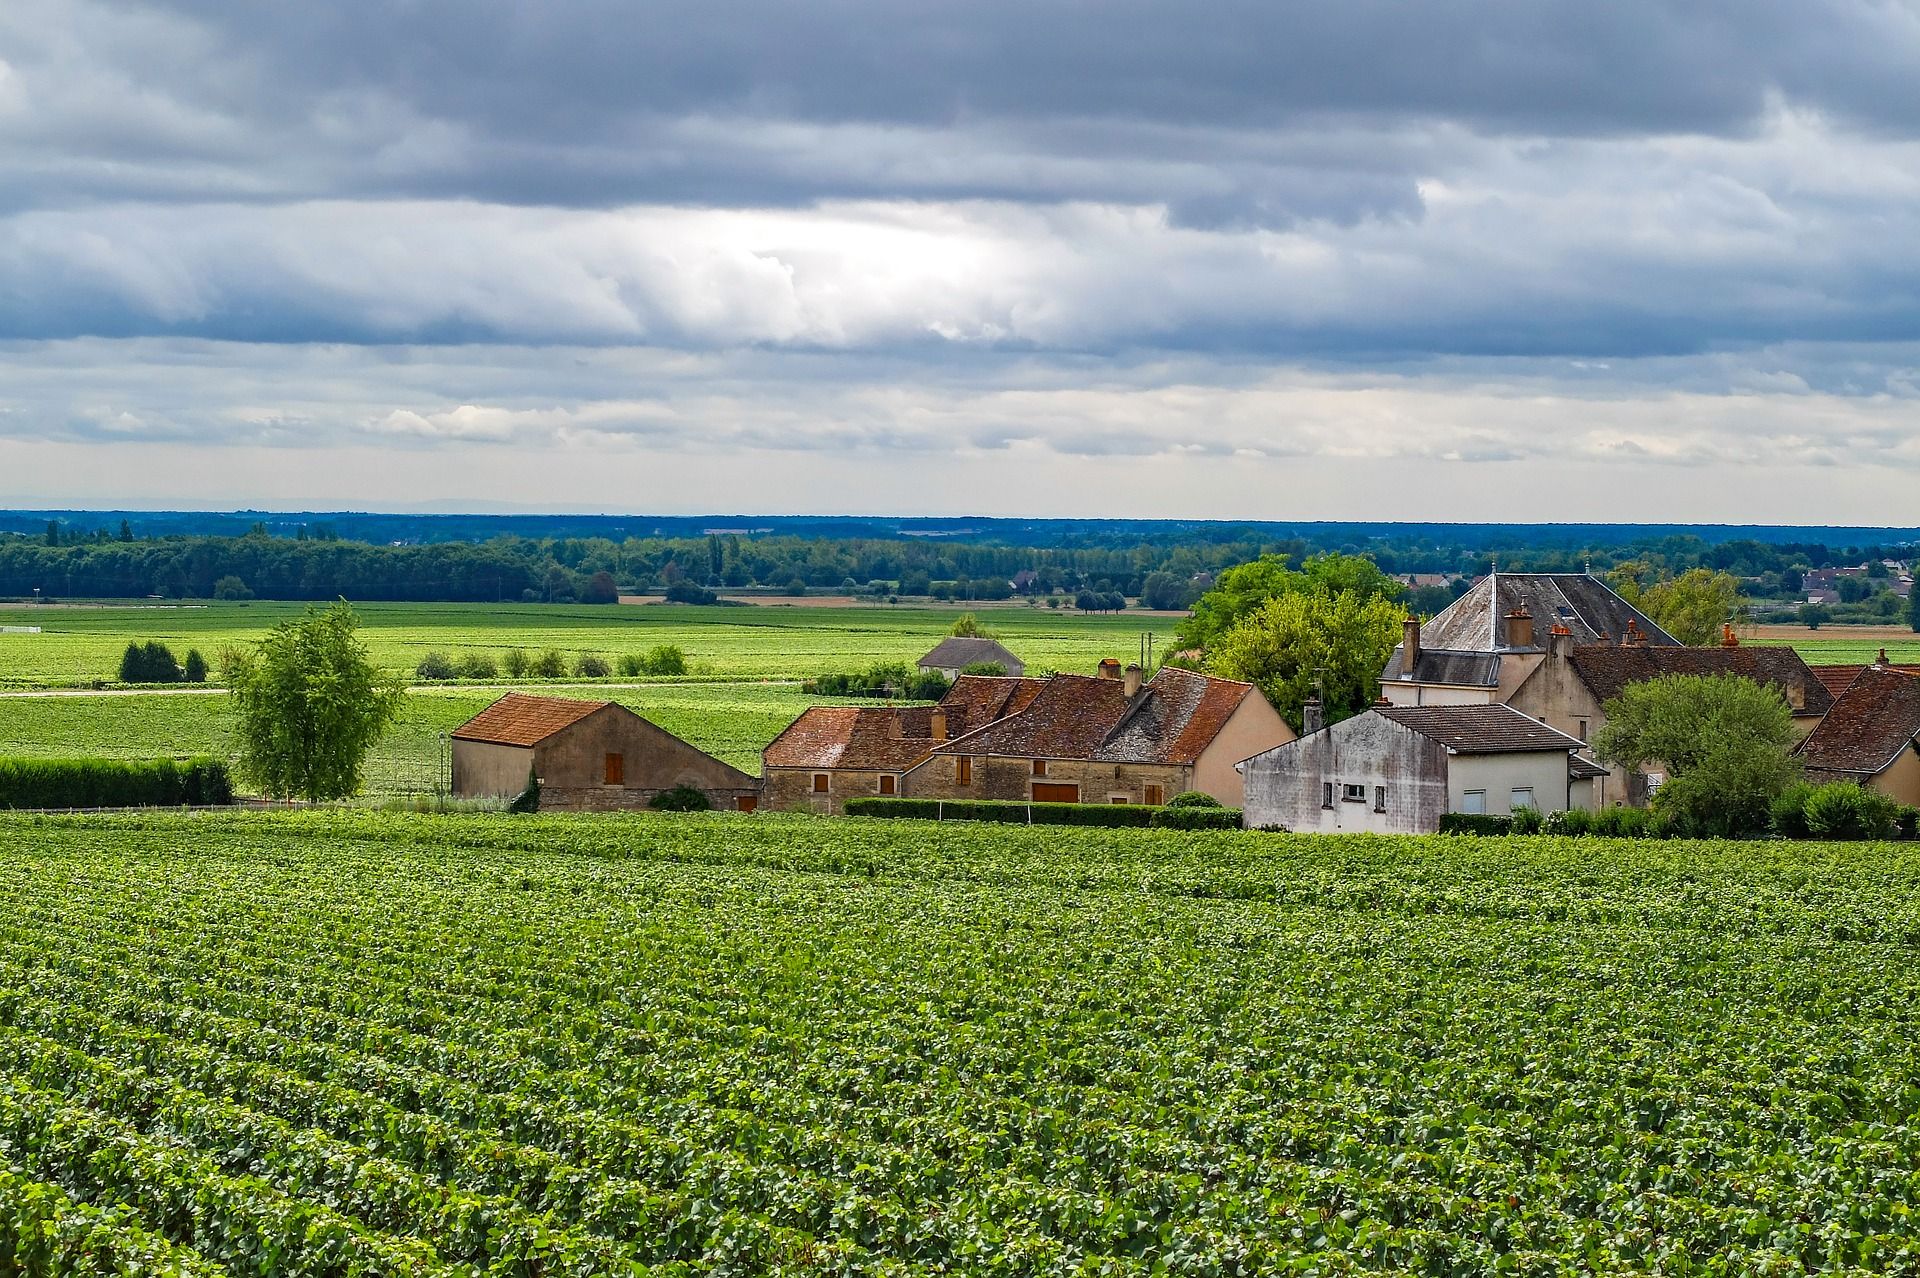 Bourgogne-Franche-Comté region of eastern France; White Burgundy wine